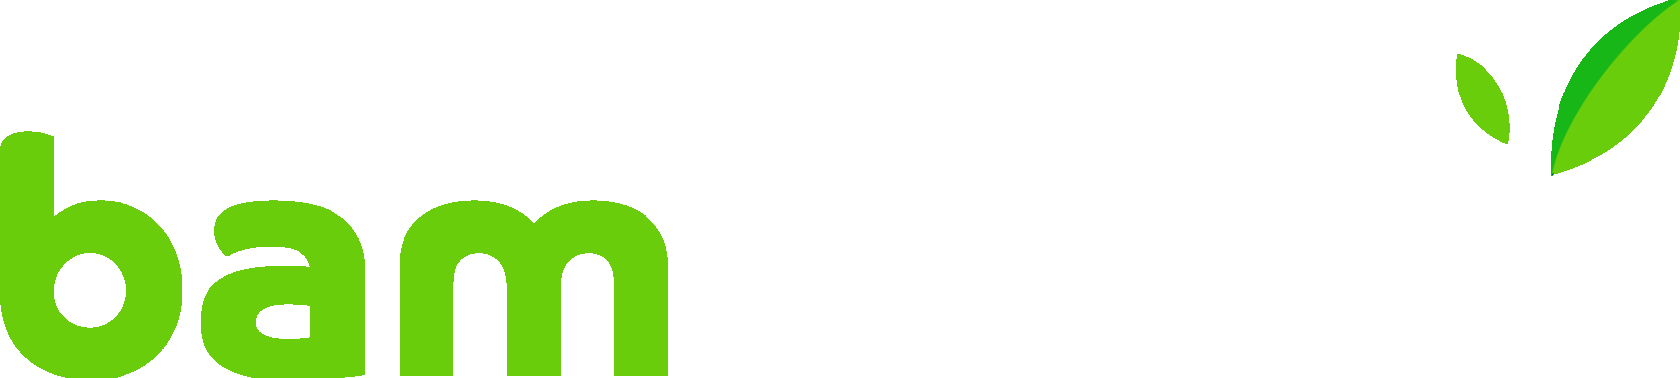 bambook logo